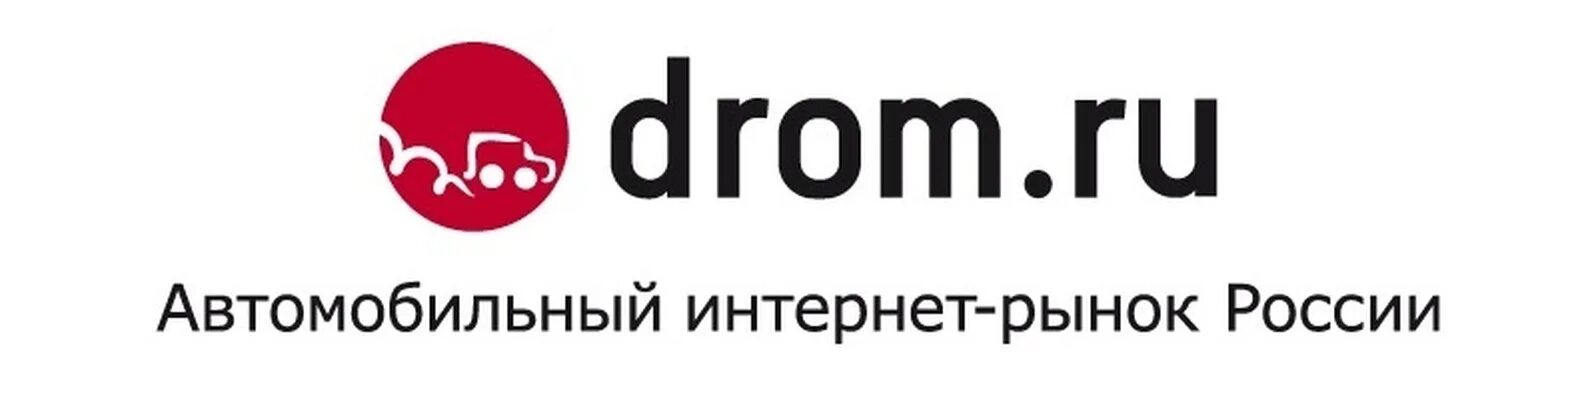 Дром ру. Drom.ru логотип. Дром картинки. Логотип дром логотип.